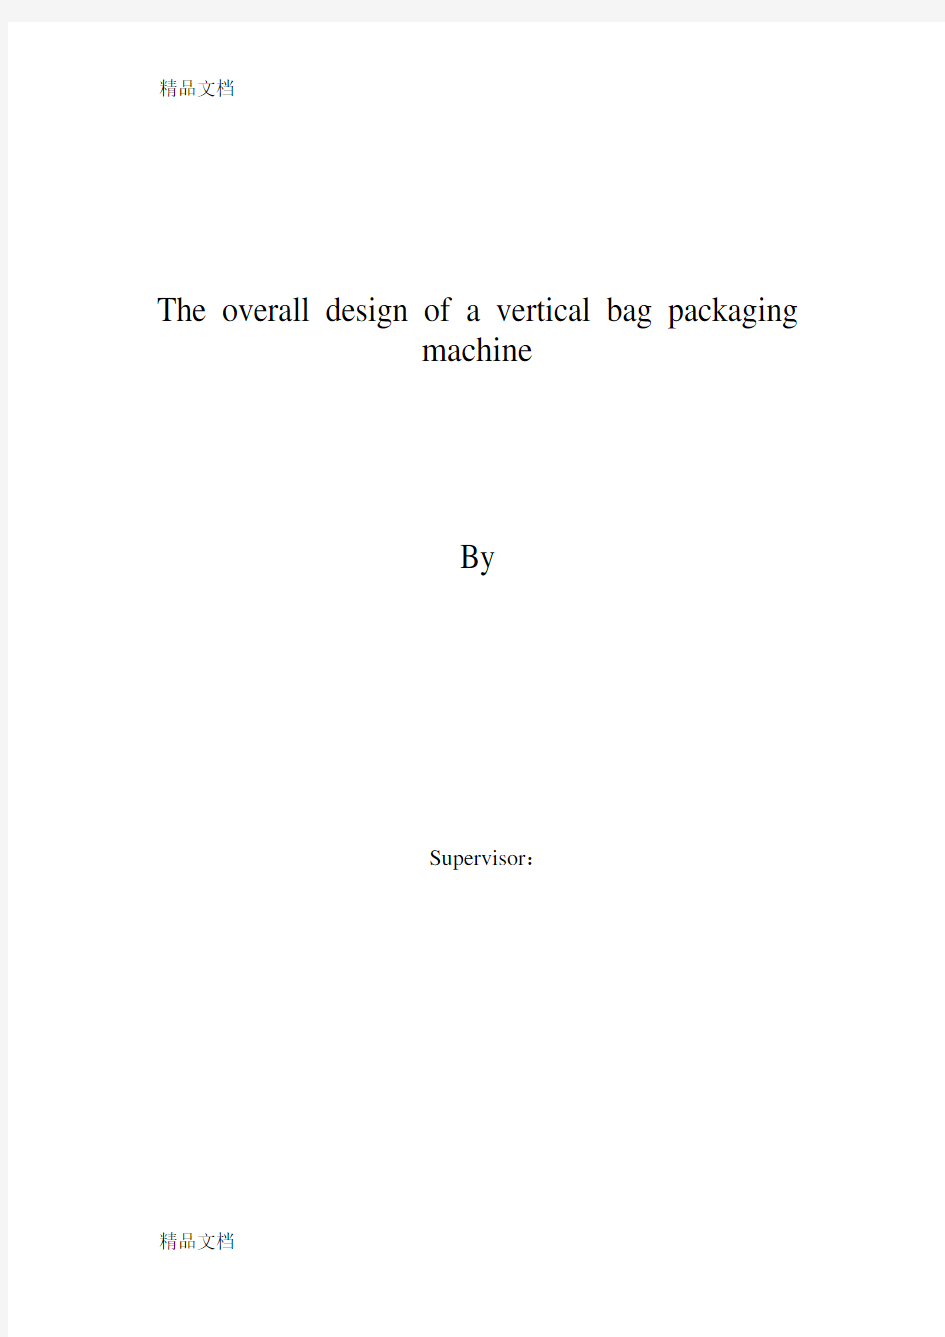 立式袋包装机总体设计(设计说明书)资料